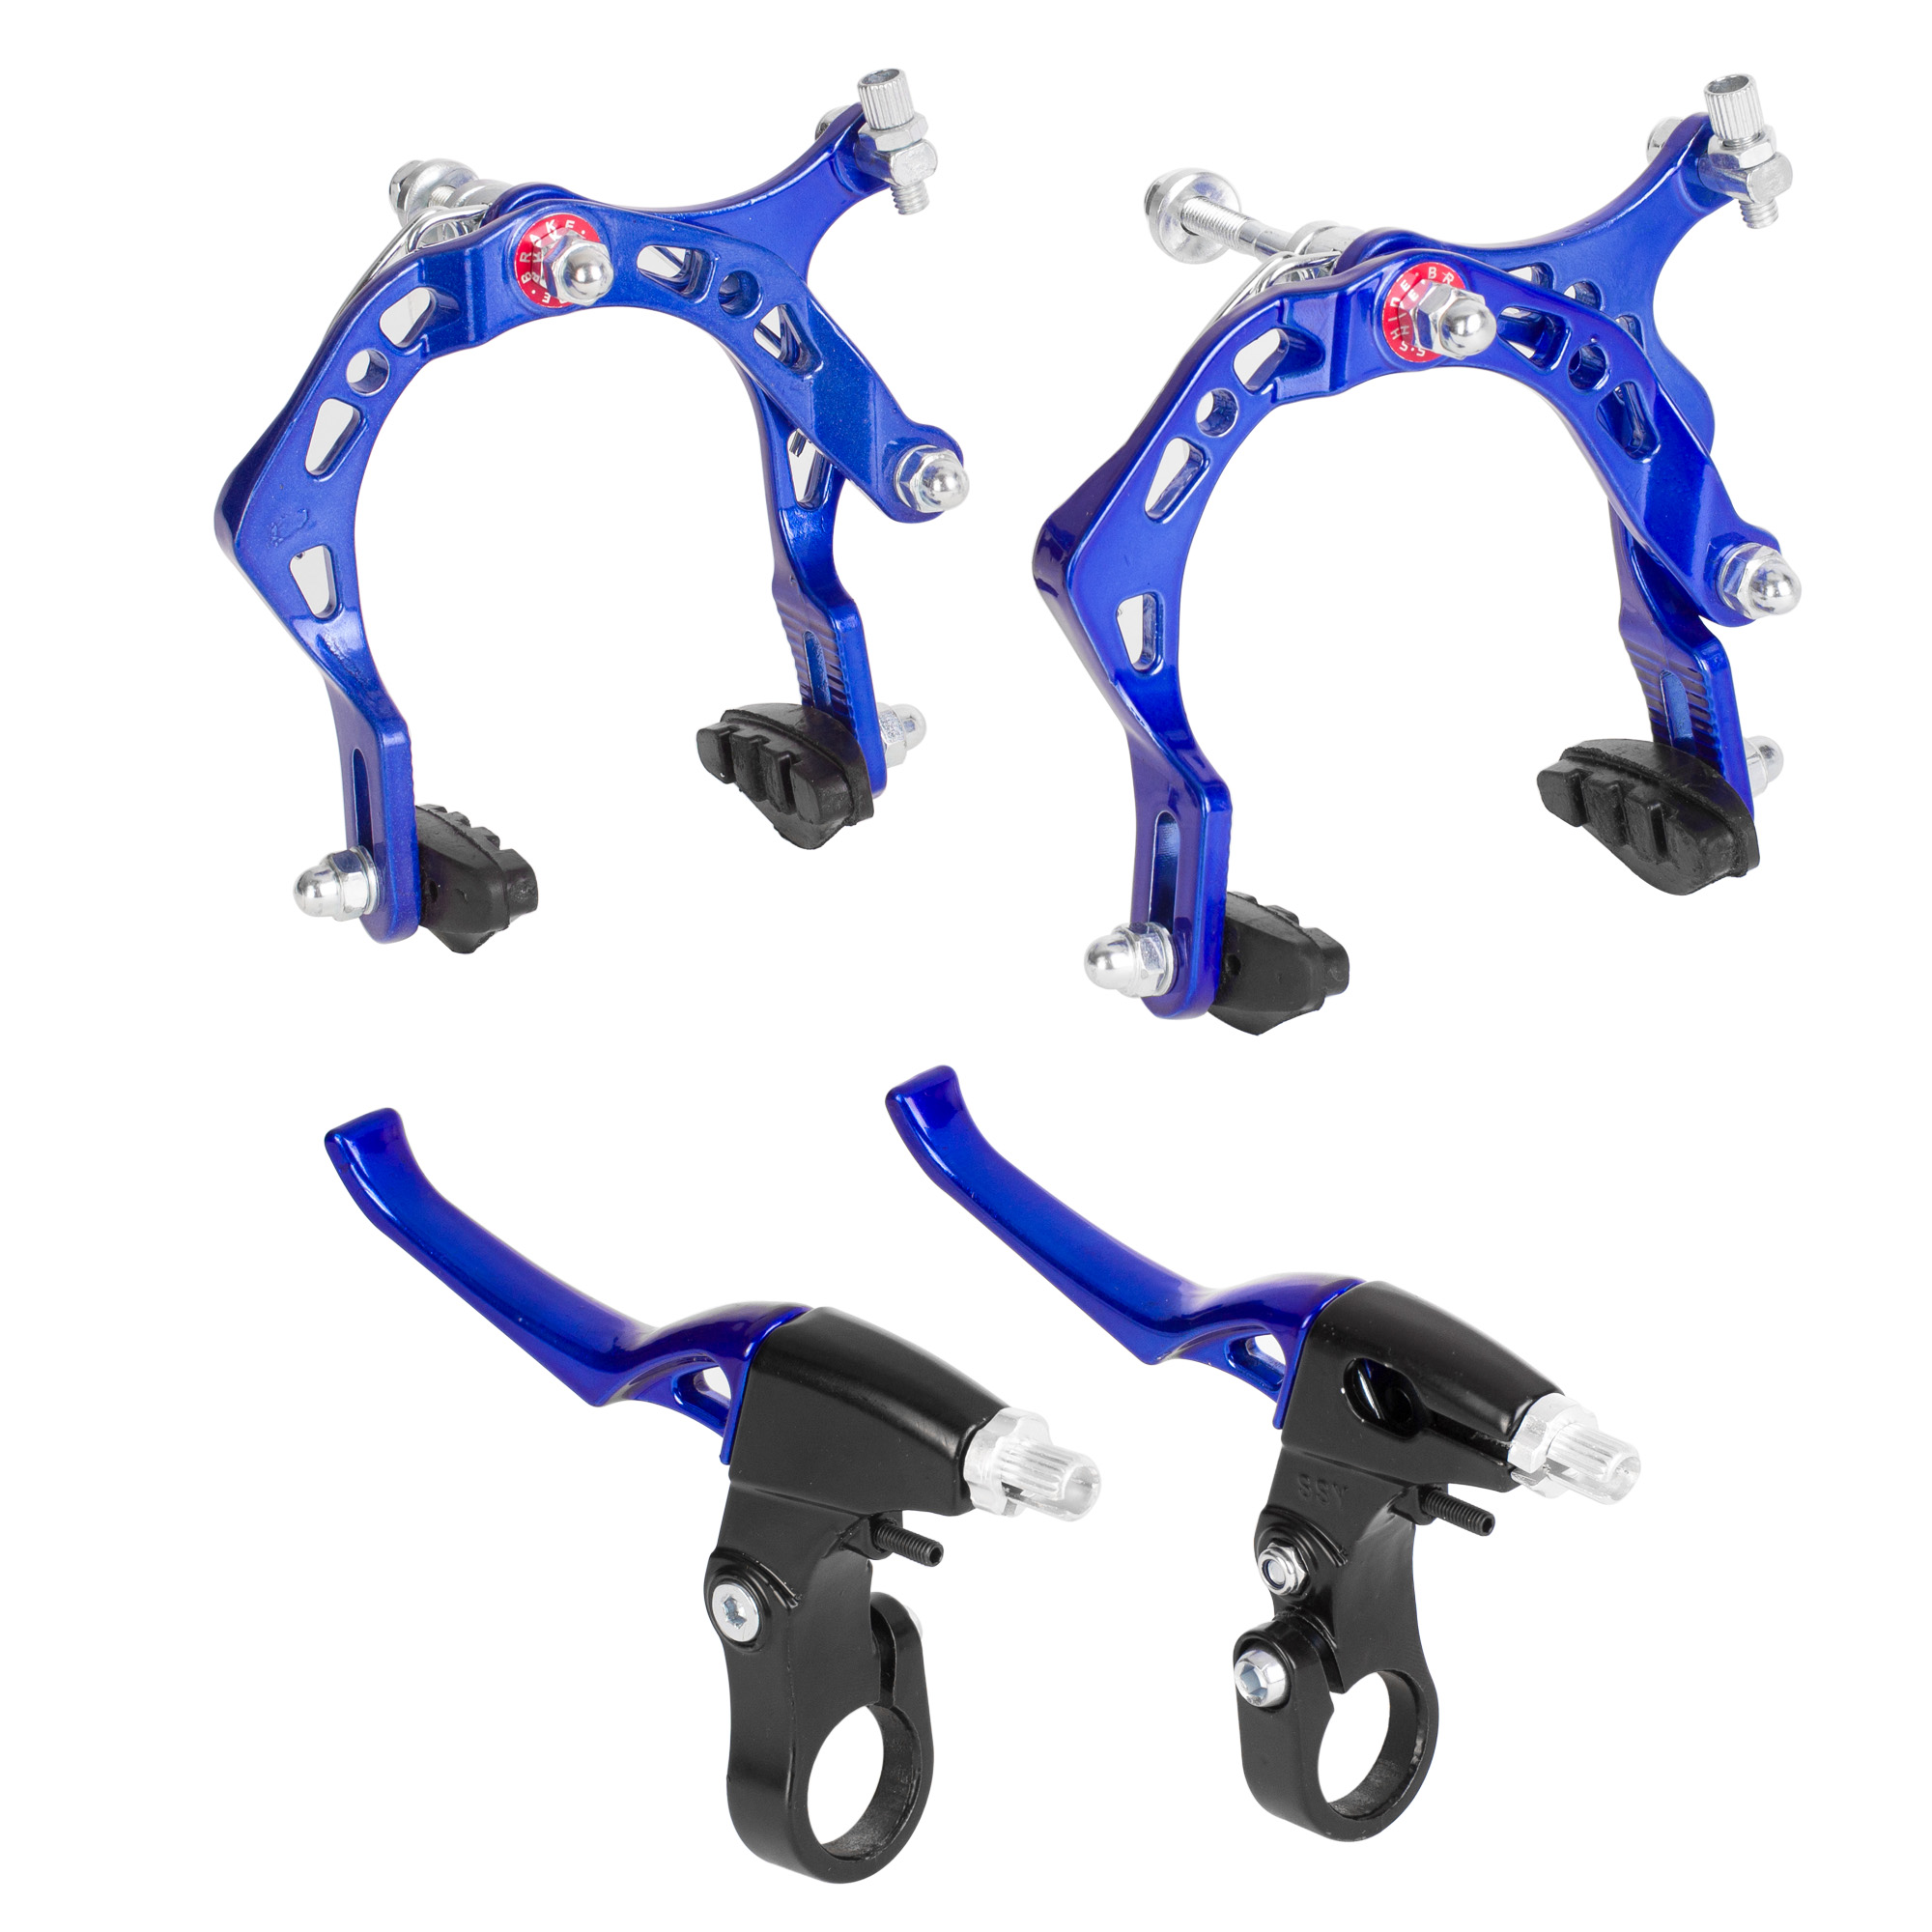 Ciclometa Detalles Freno caliper para bicicleta BMX aluminio azul con  zapatas, palanca y cable S. Shine